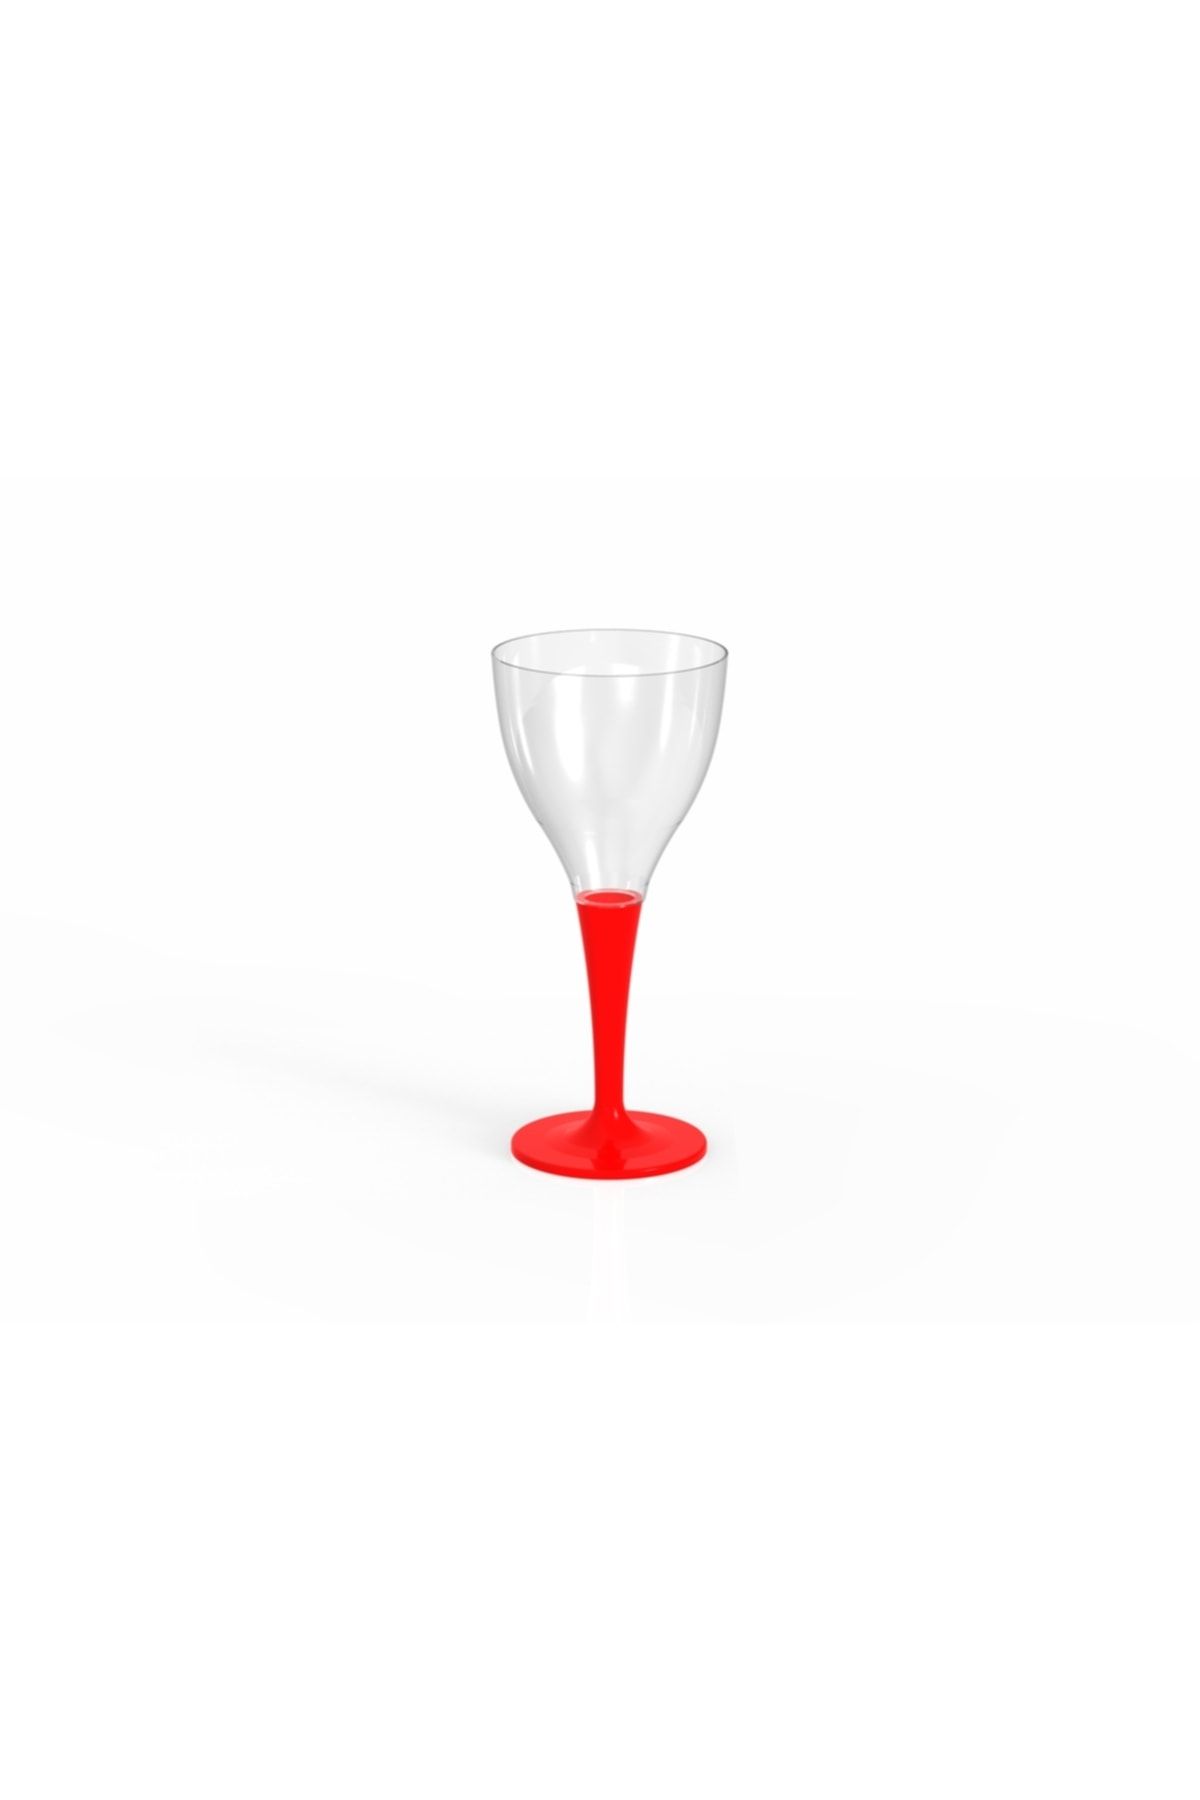 BERGAMA PLASTİK Plastik Şarap Kadehi Kırmızı Tek Kullanımlık Ve Tekrar Kullanılabilir Parti Kadehi (10 Adet)